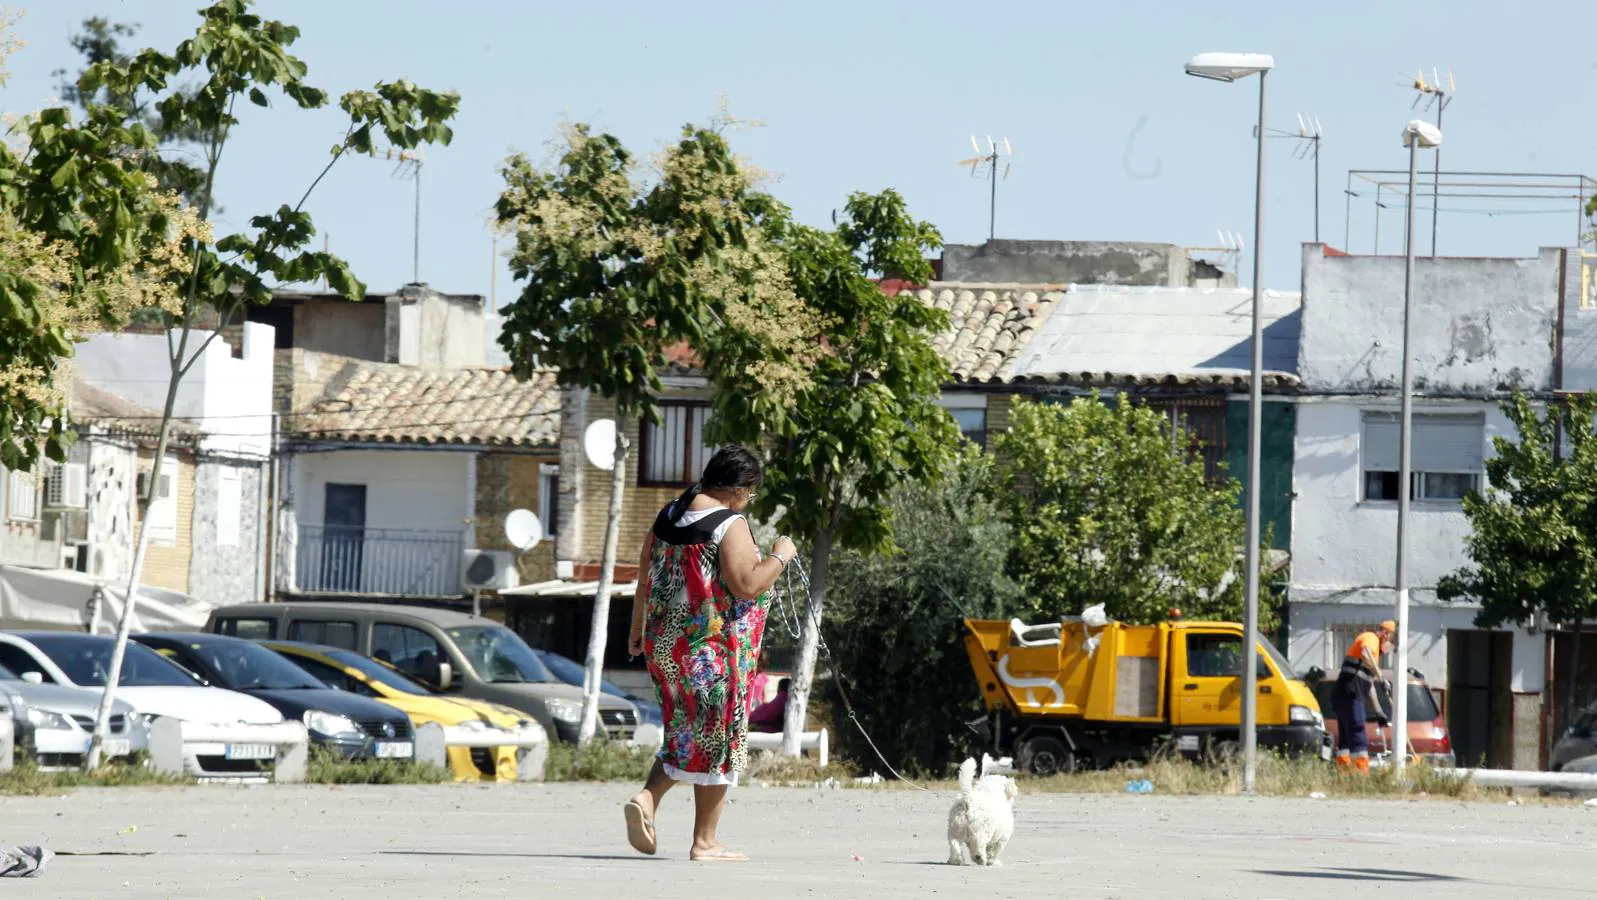 Torreblanca, un barrio lastrado por el paro y la delincuencia